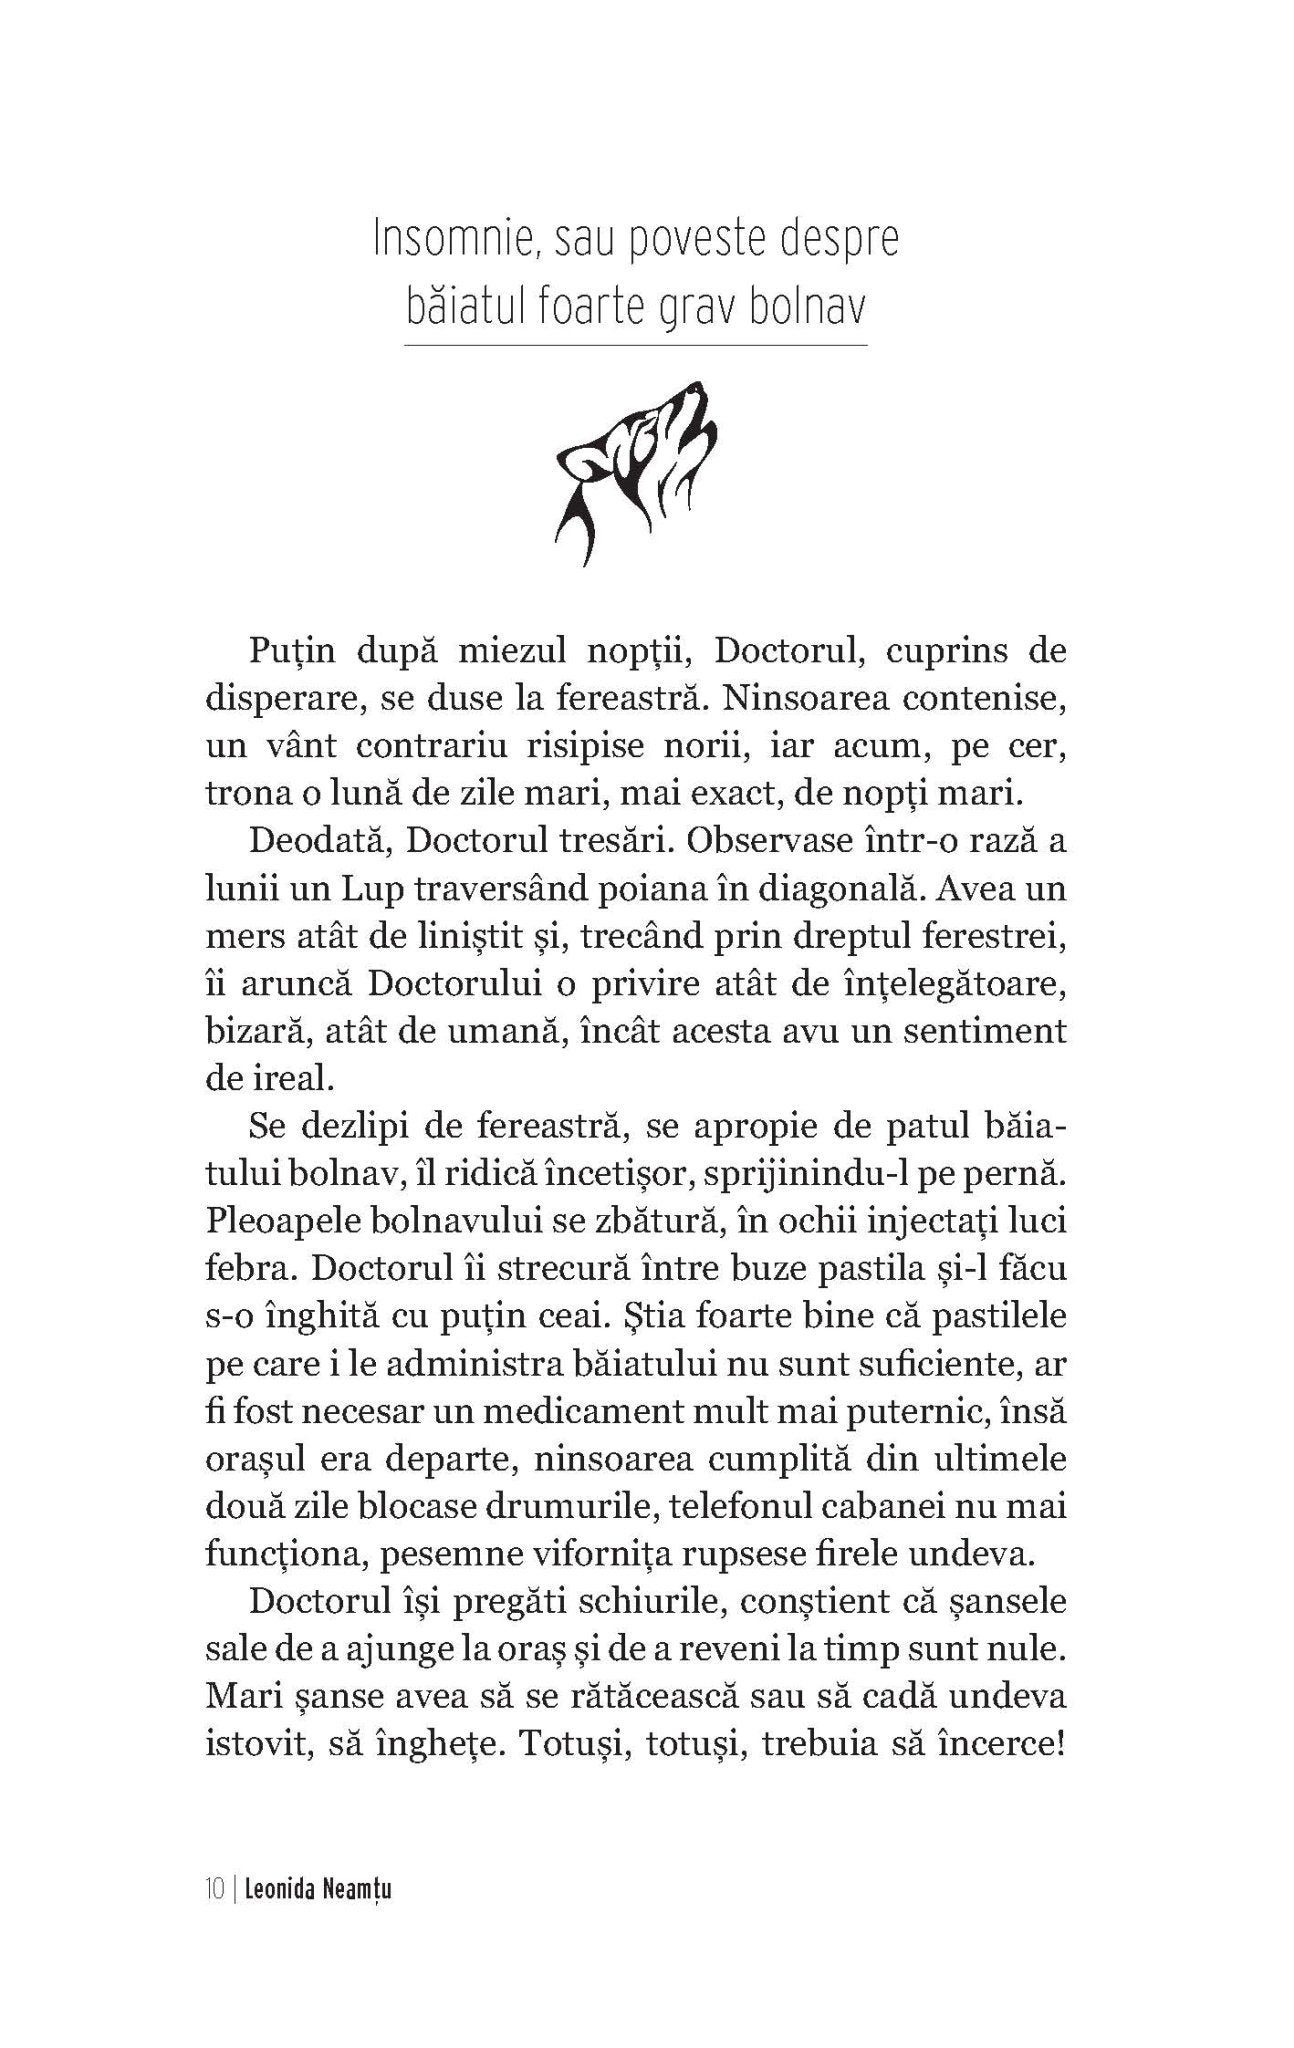 Deodata, Inevitabilul; Norii De Diamant - Ed. digitala - PDF - Publisol.ro